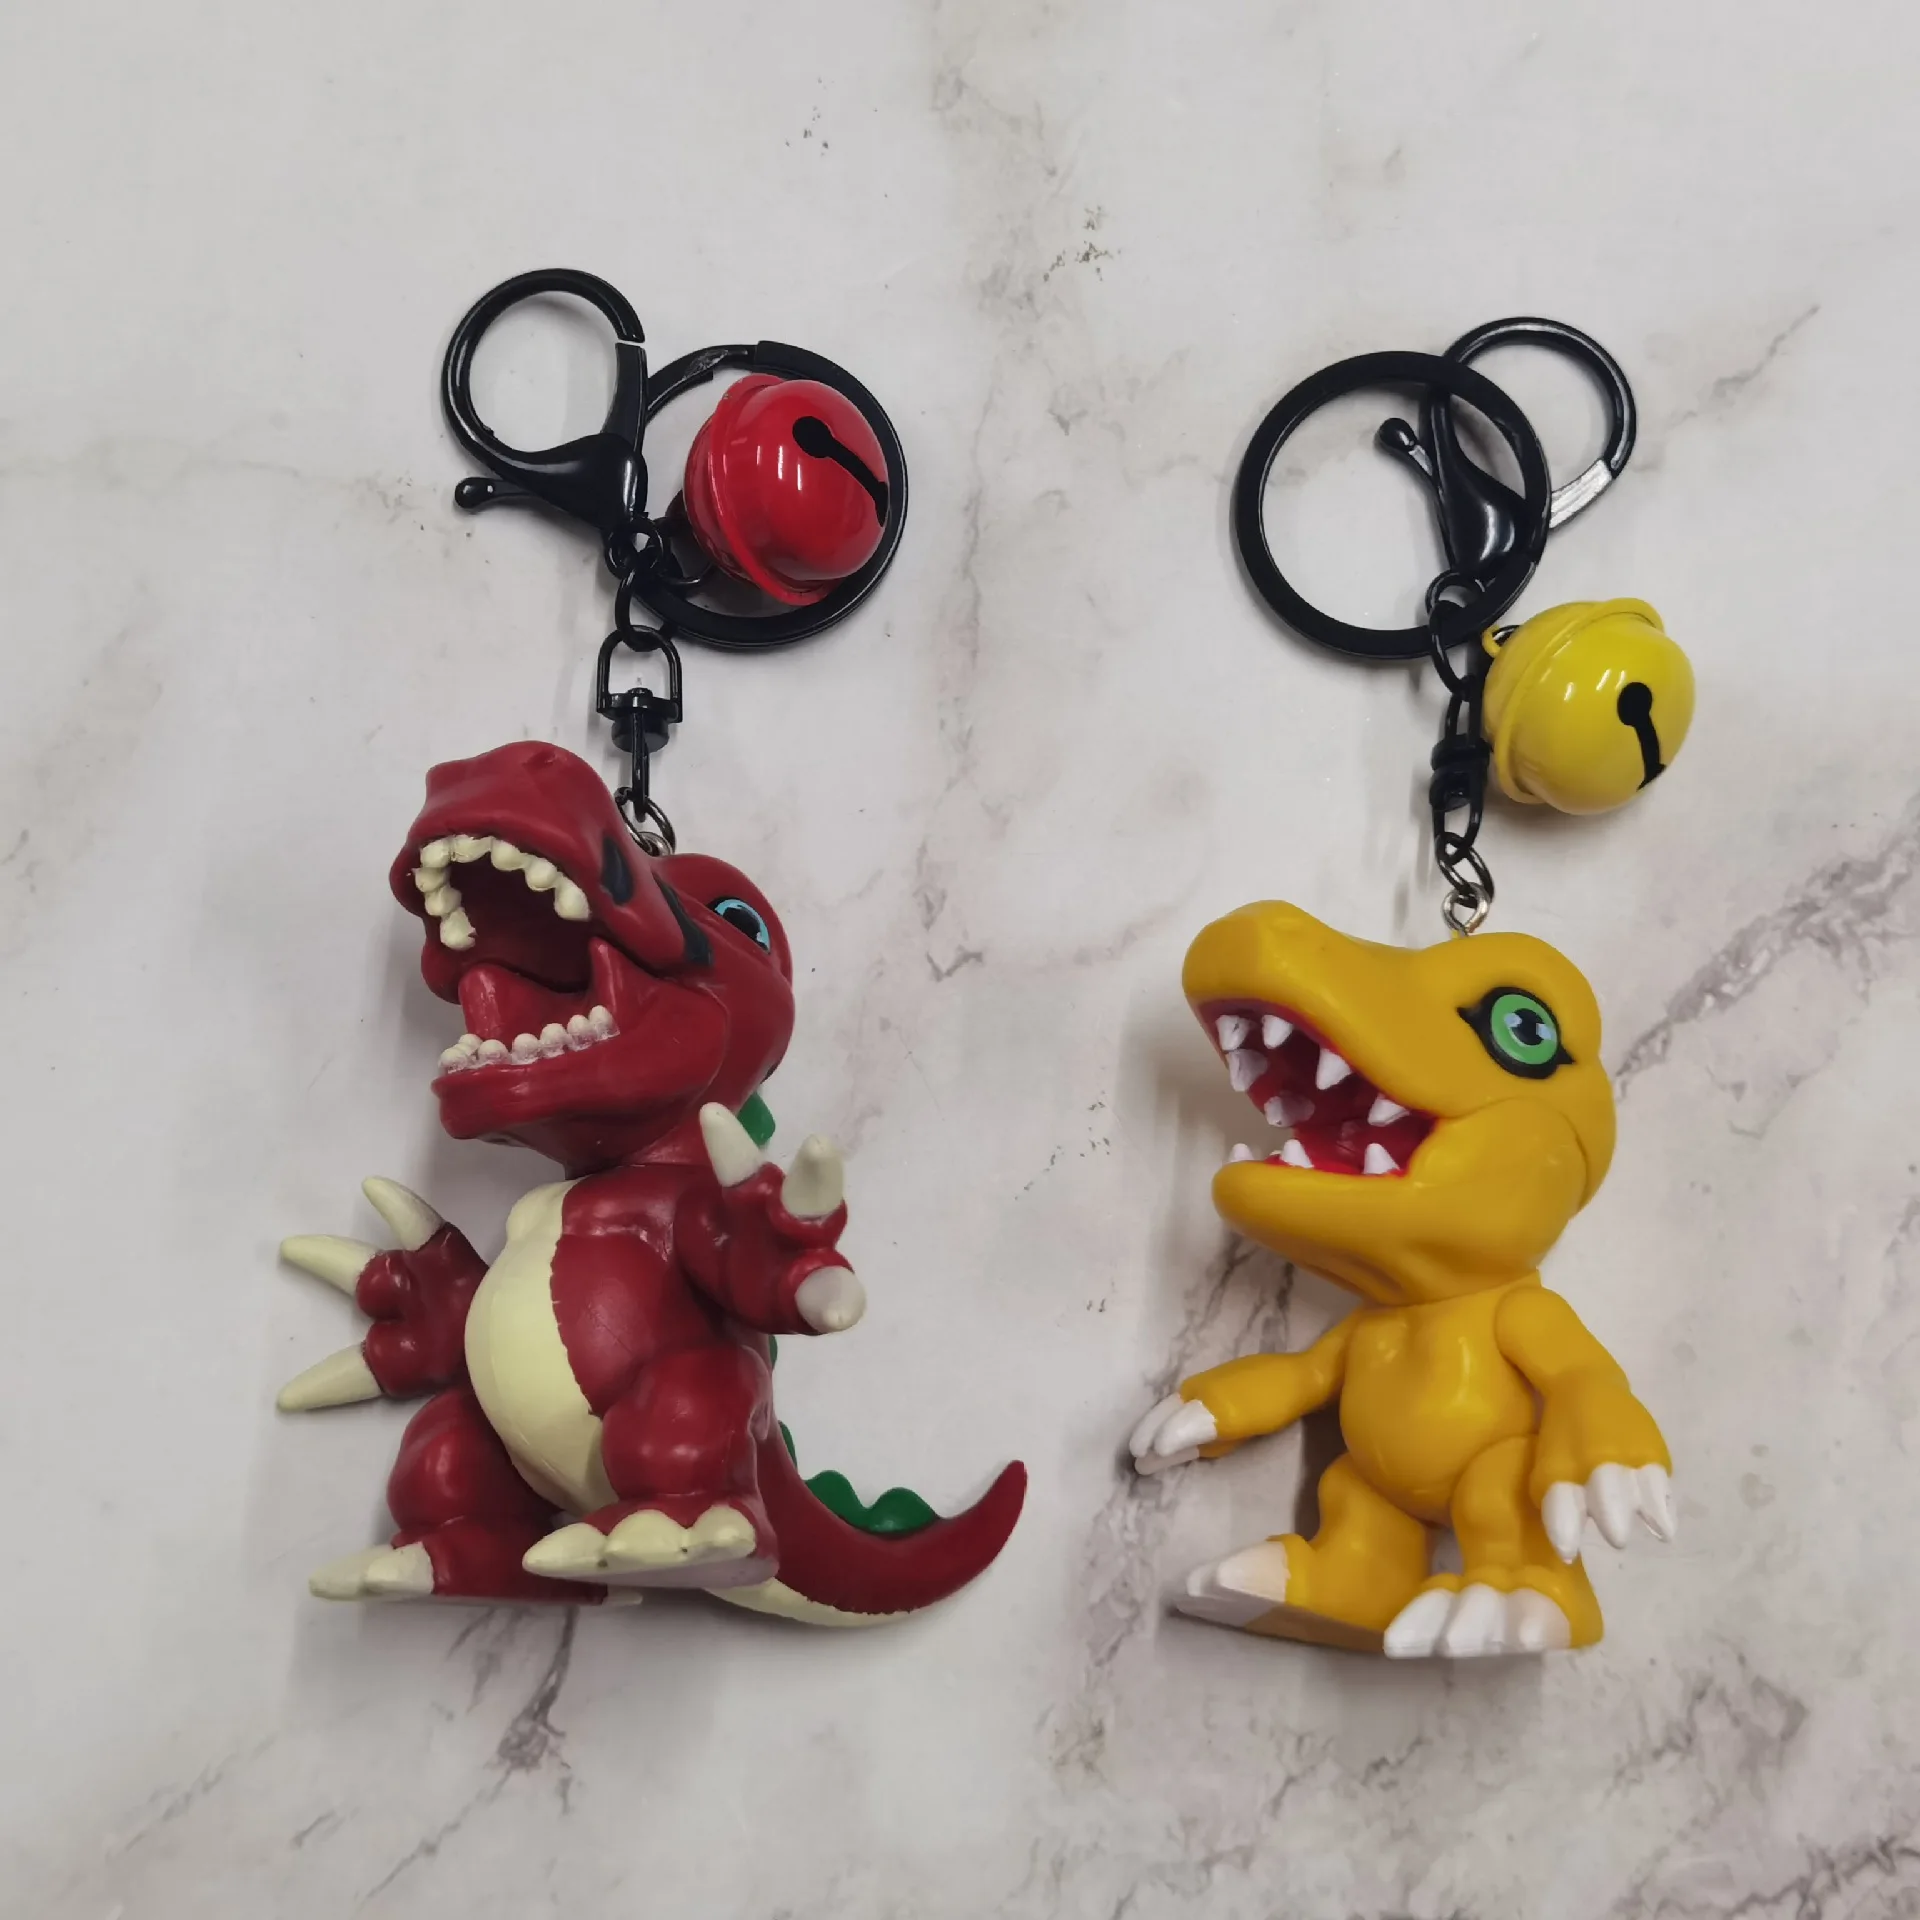 9 pçs/set Japão Anime Monstro Digitais Digimon Figura Brinquedos